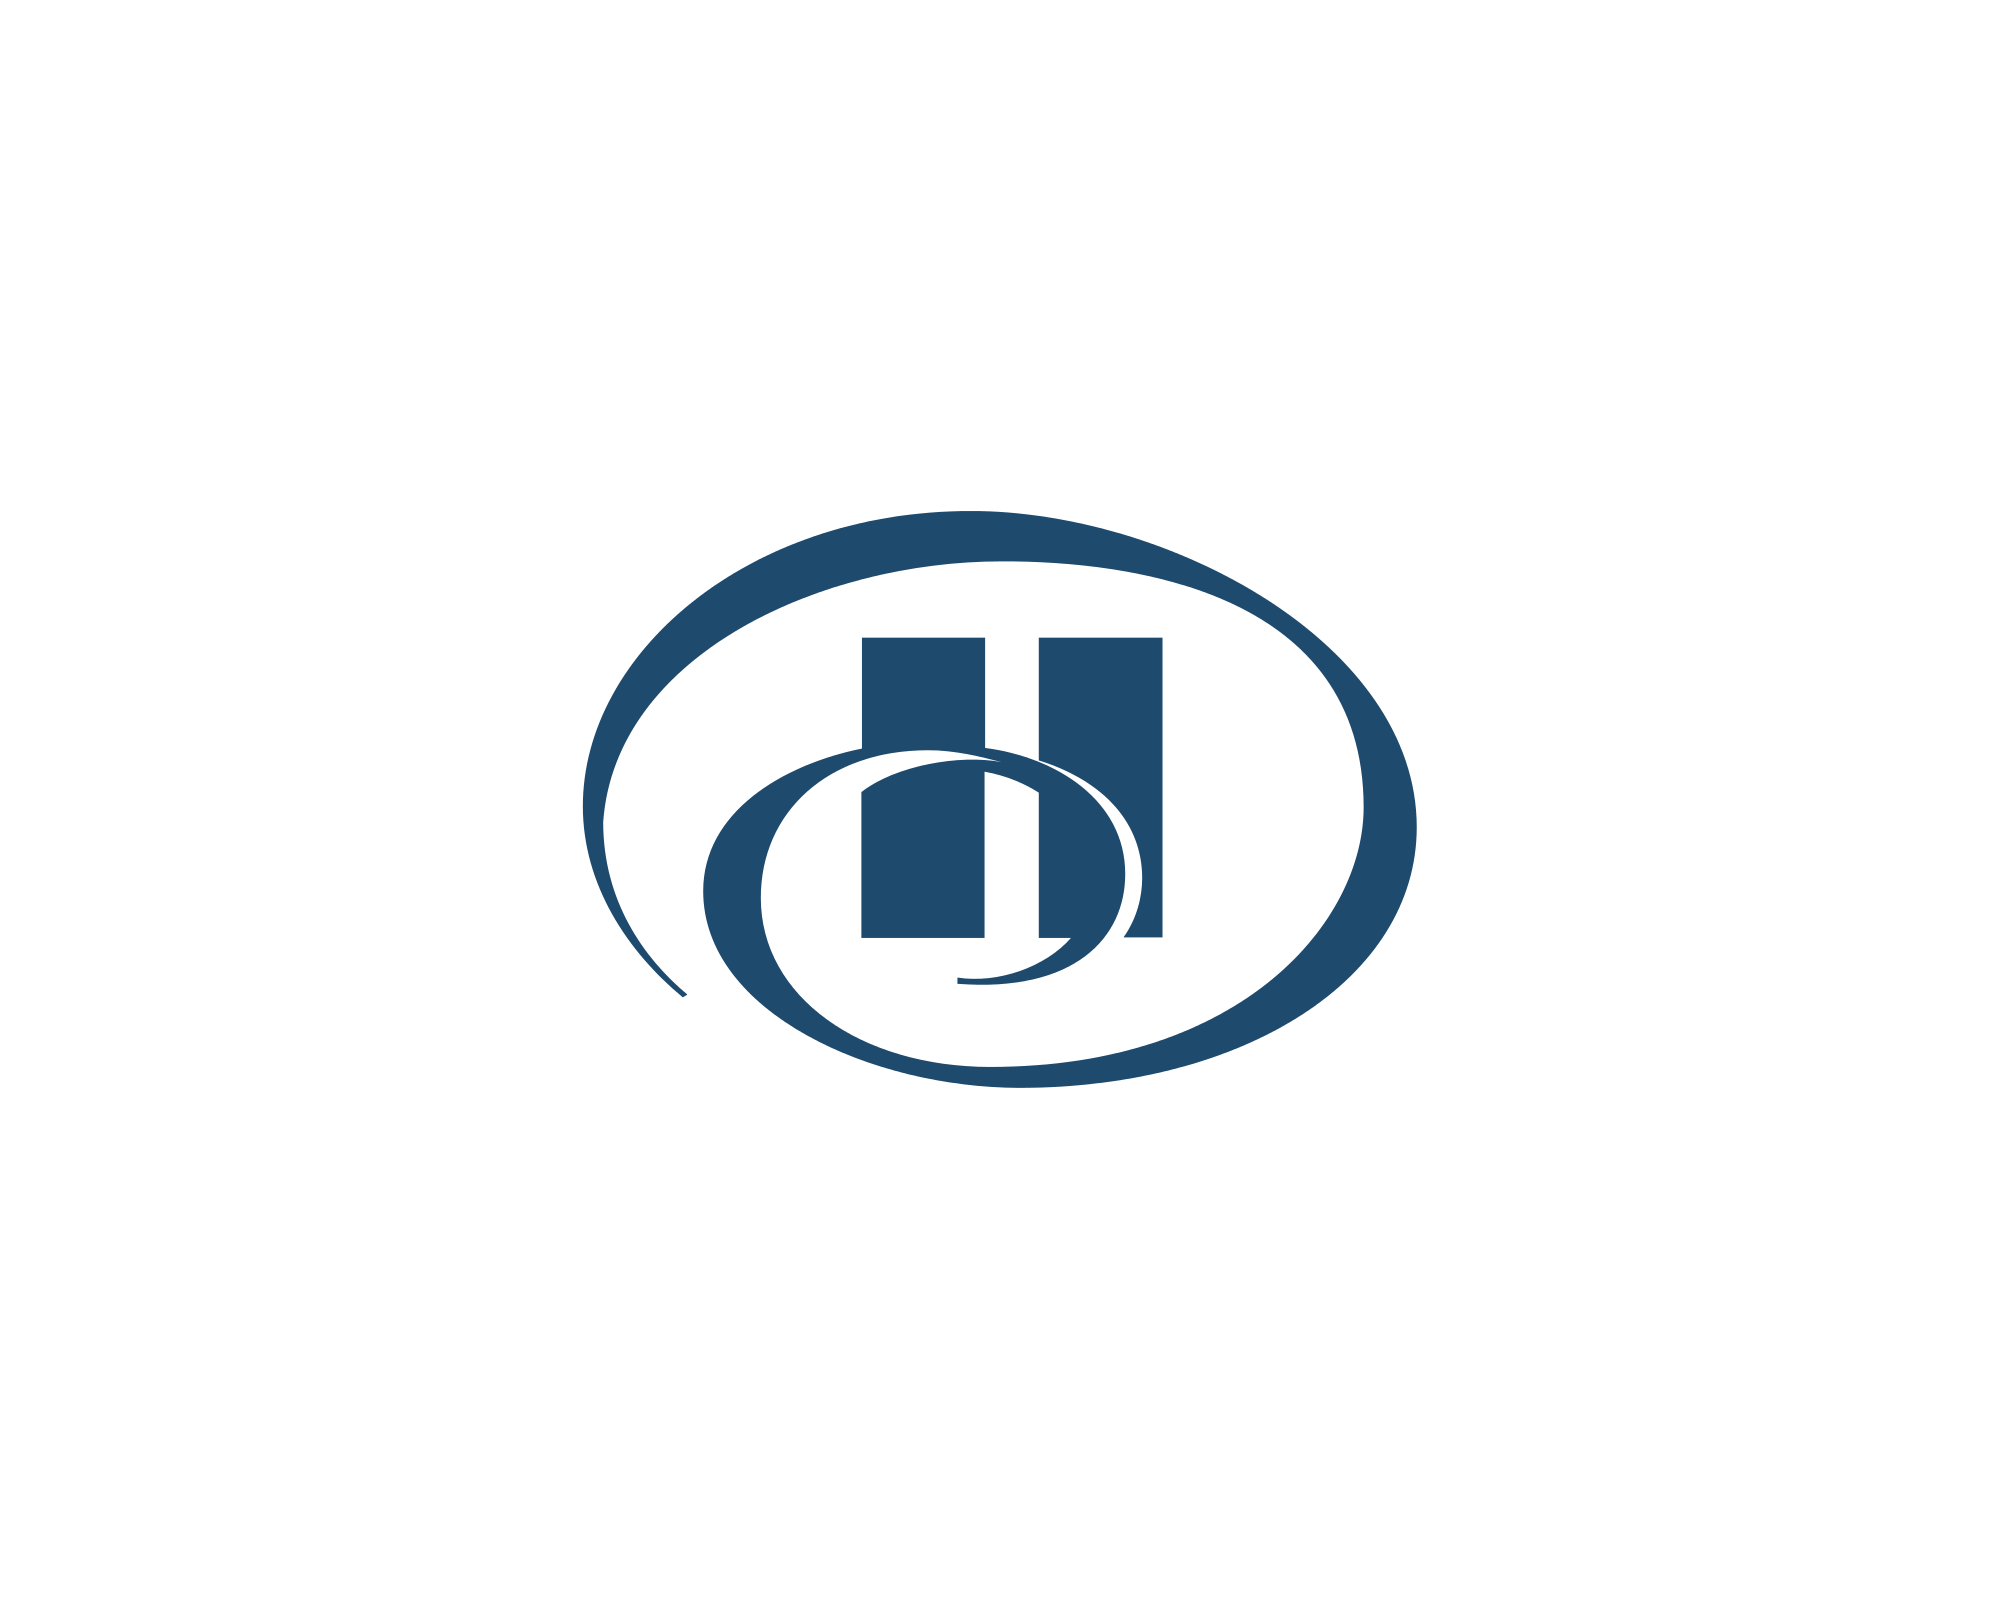 H Circle Logo - H Logo Png Images